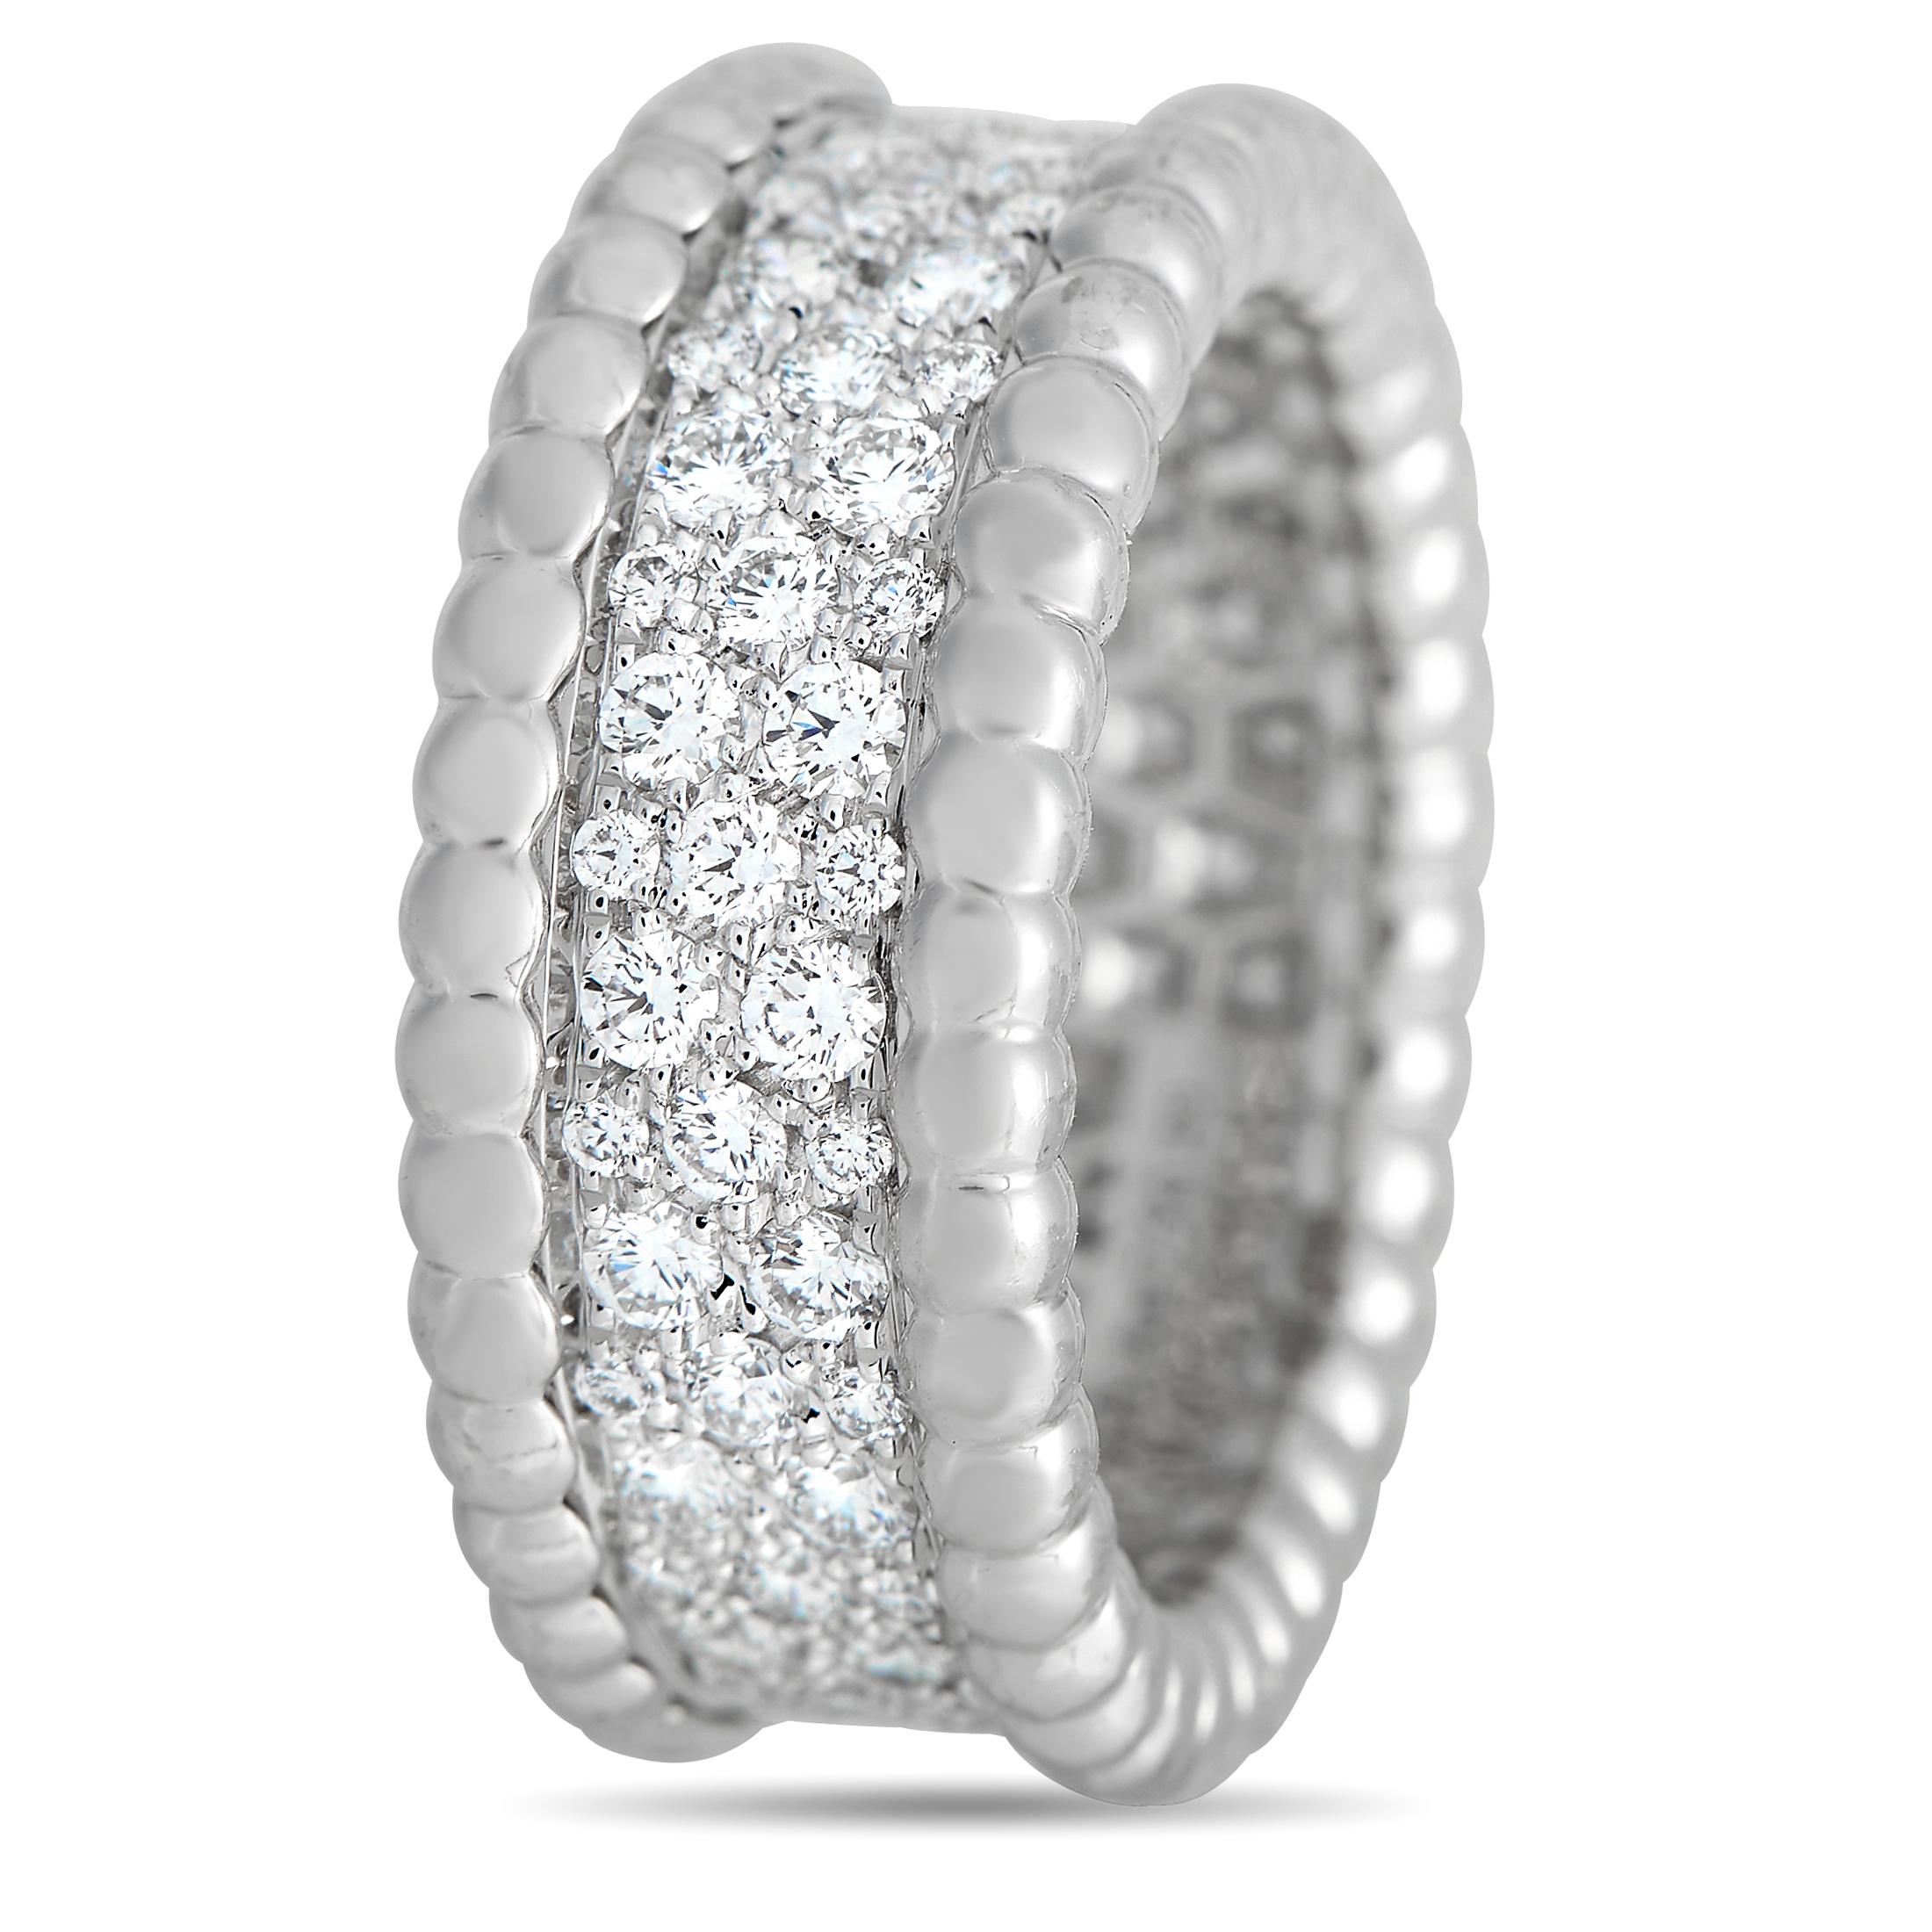 Der Ring Perle von Van Cleef & Arpels wirkt kühn und zart zugleich. Das 6 mm dicke Weißgoldband ist mit drei Reihen von Diamanten besetzt. Die Kanten des Schaftes sind mit einer zierlichen Reihe von winzigen, polierten Weißgold Perlen